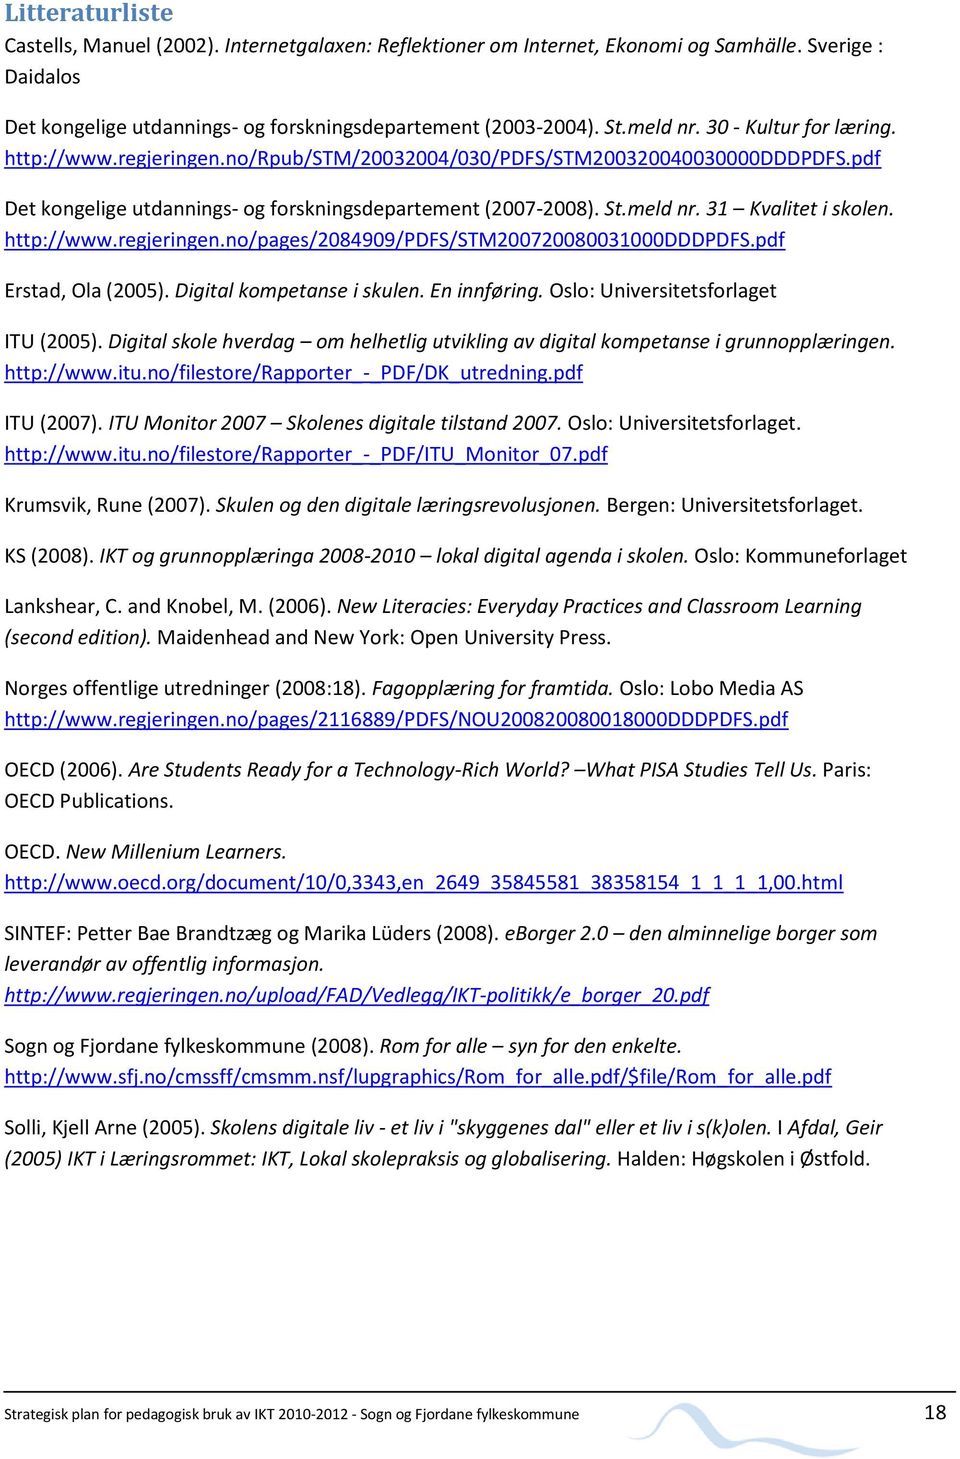 31 Kvalitet i skolen. http://www.regjeringen.no/pages/2084909/pdfs/stm200720080031000dddpdfs.pdf Erstad, Ola (2005). Digital kompetanse i skulen. En innføring. Oslo: Universitetsforlaget ITU (2005).